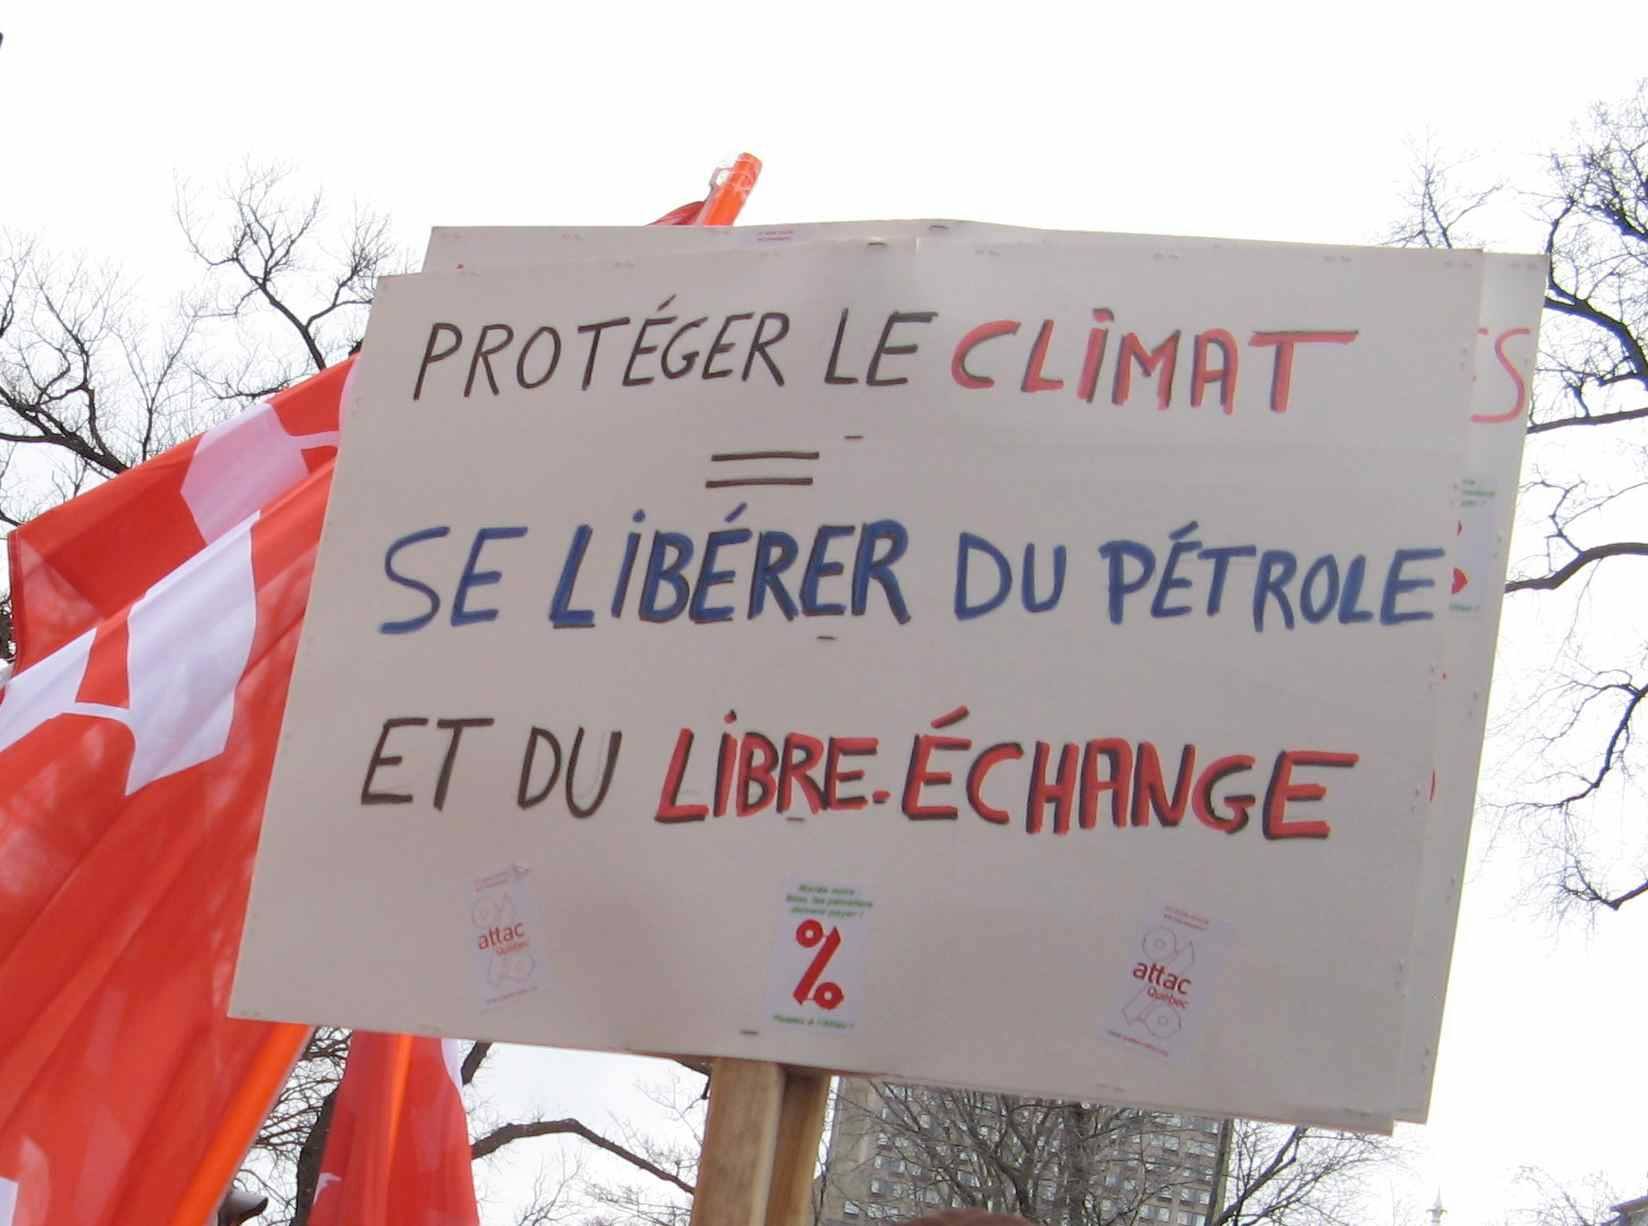 Protéger le climat = Se libérer du pétrole et du libre-échange